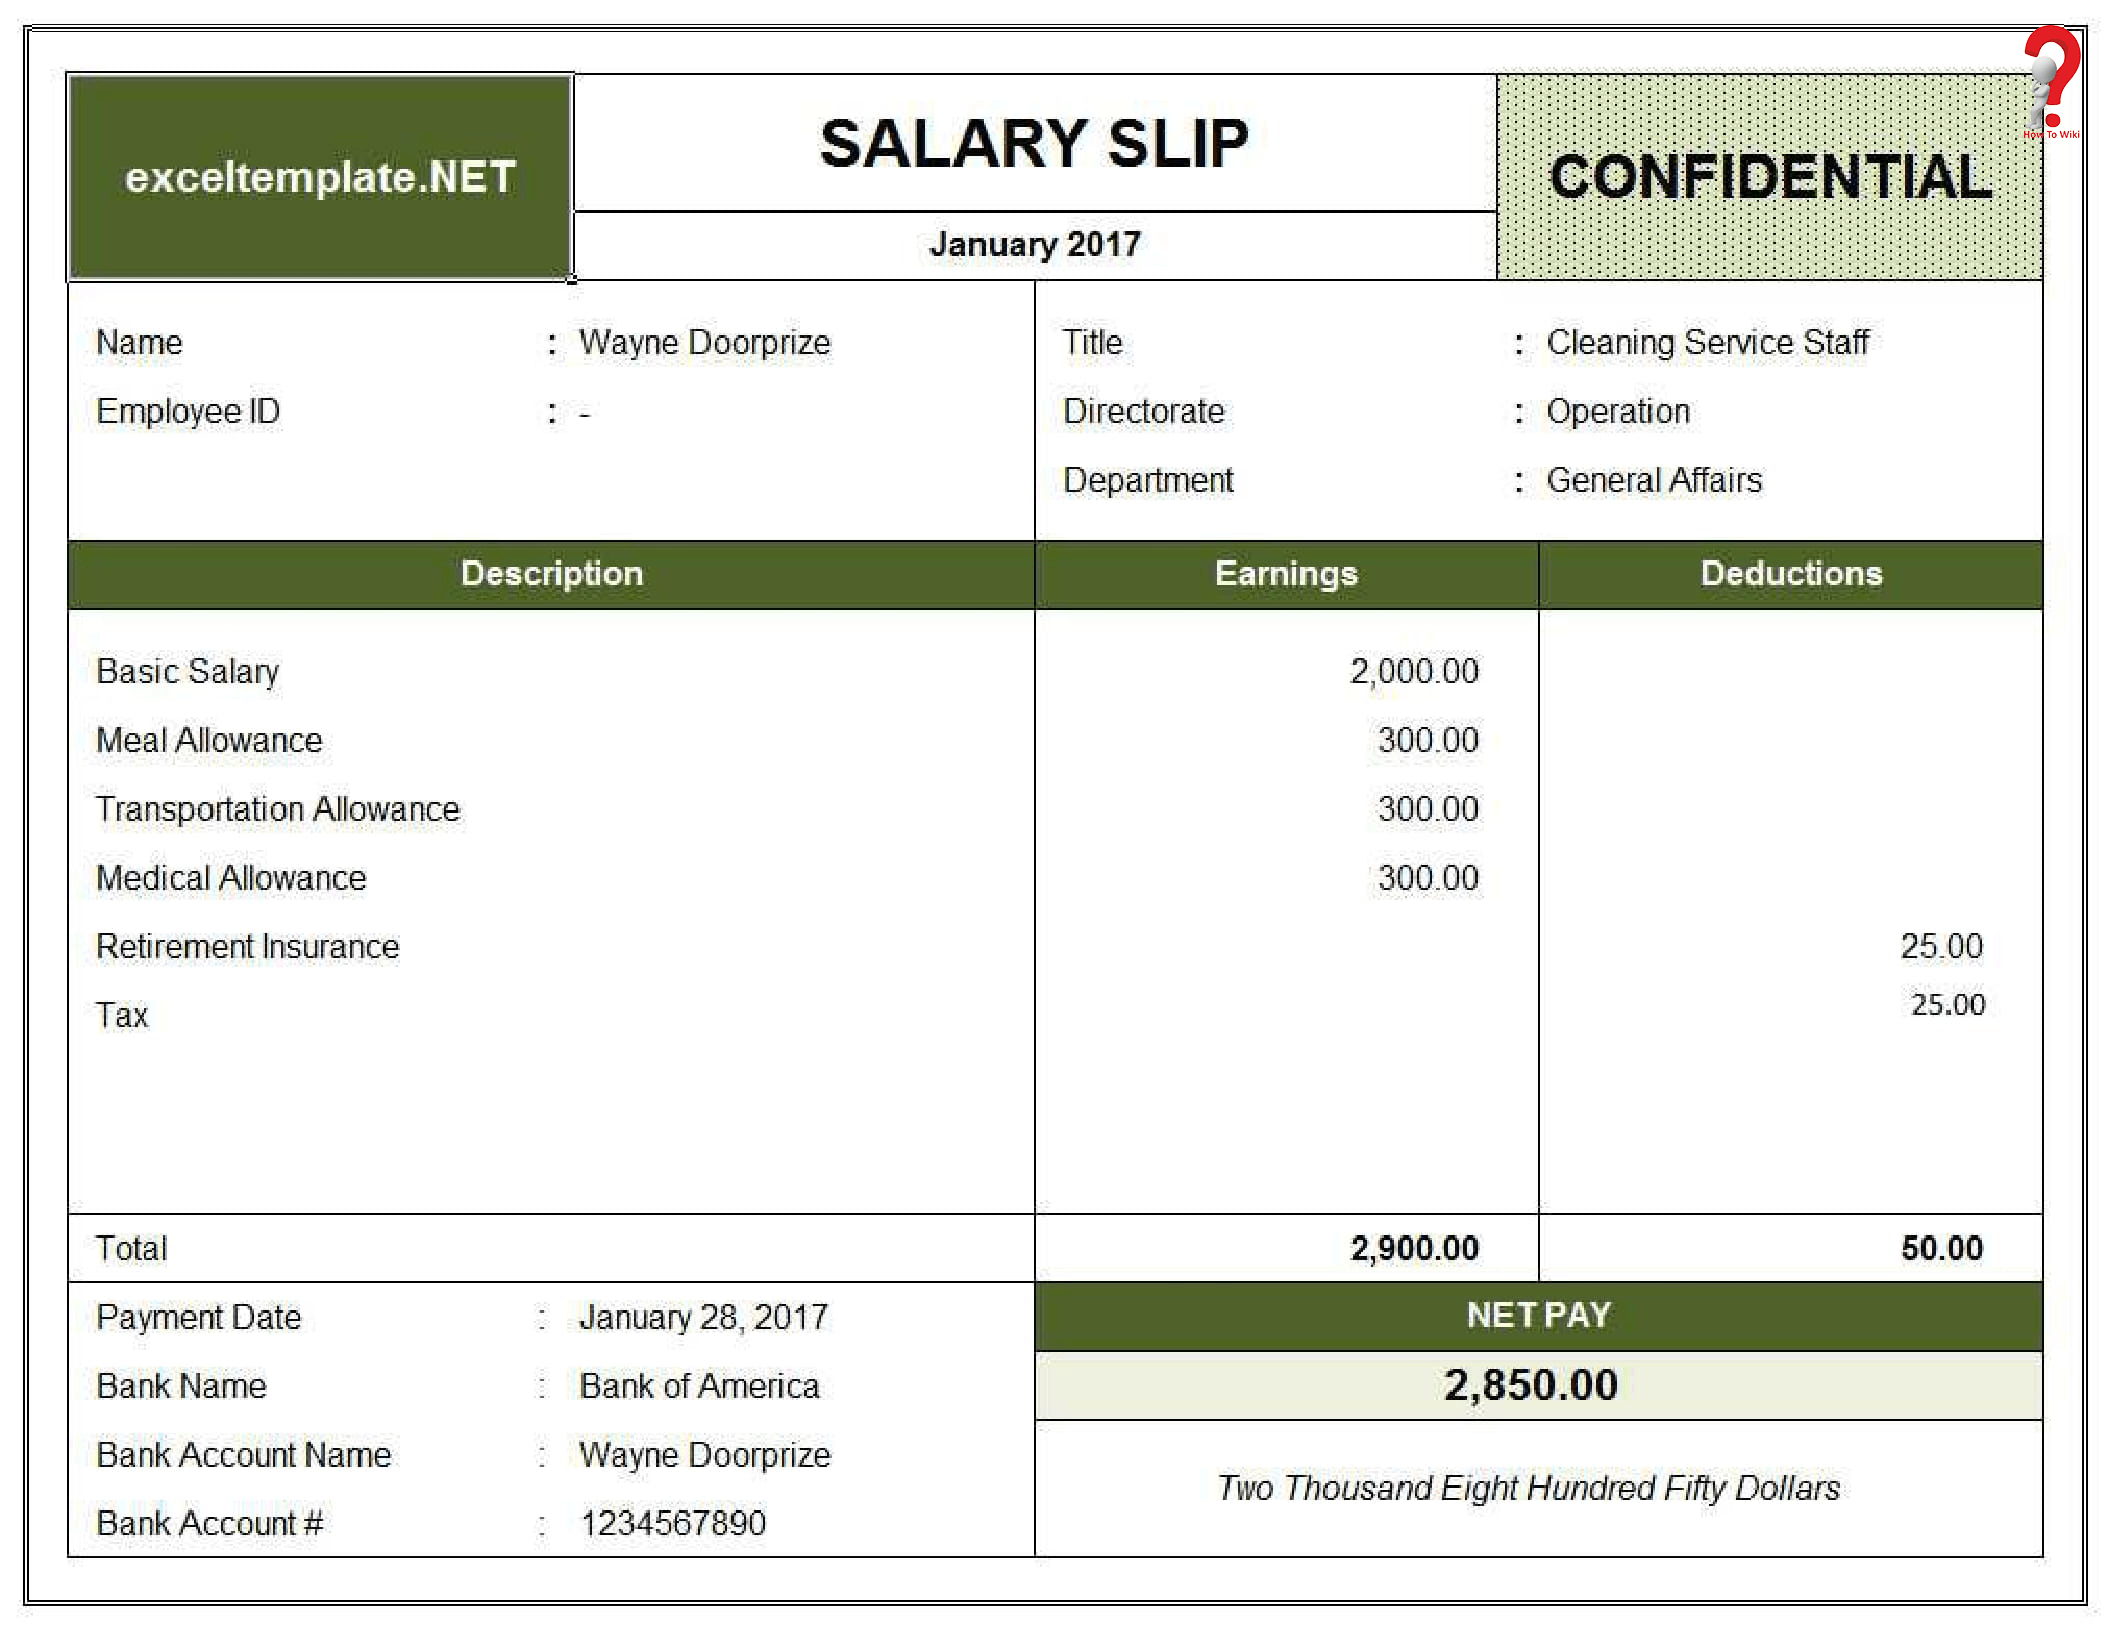 crpf salary slip pay slip download